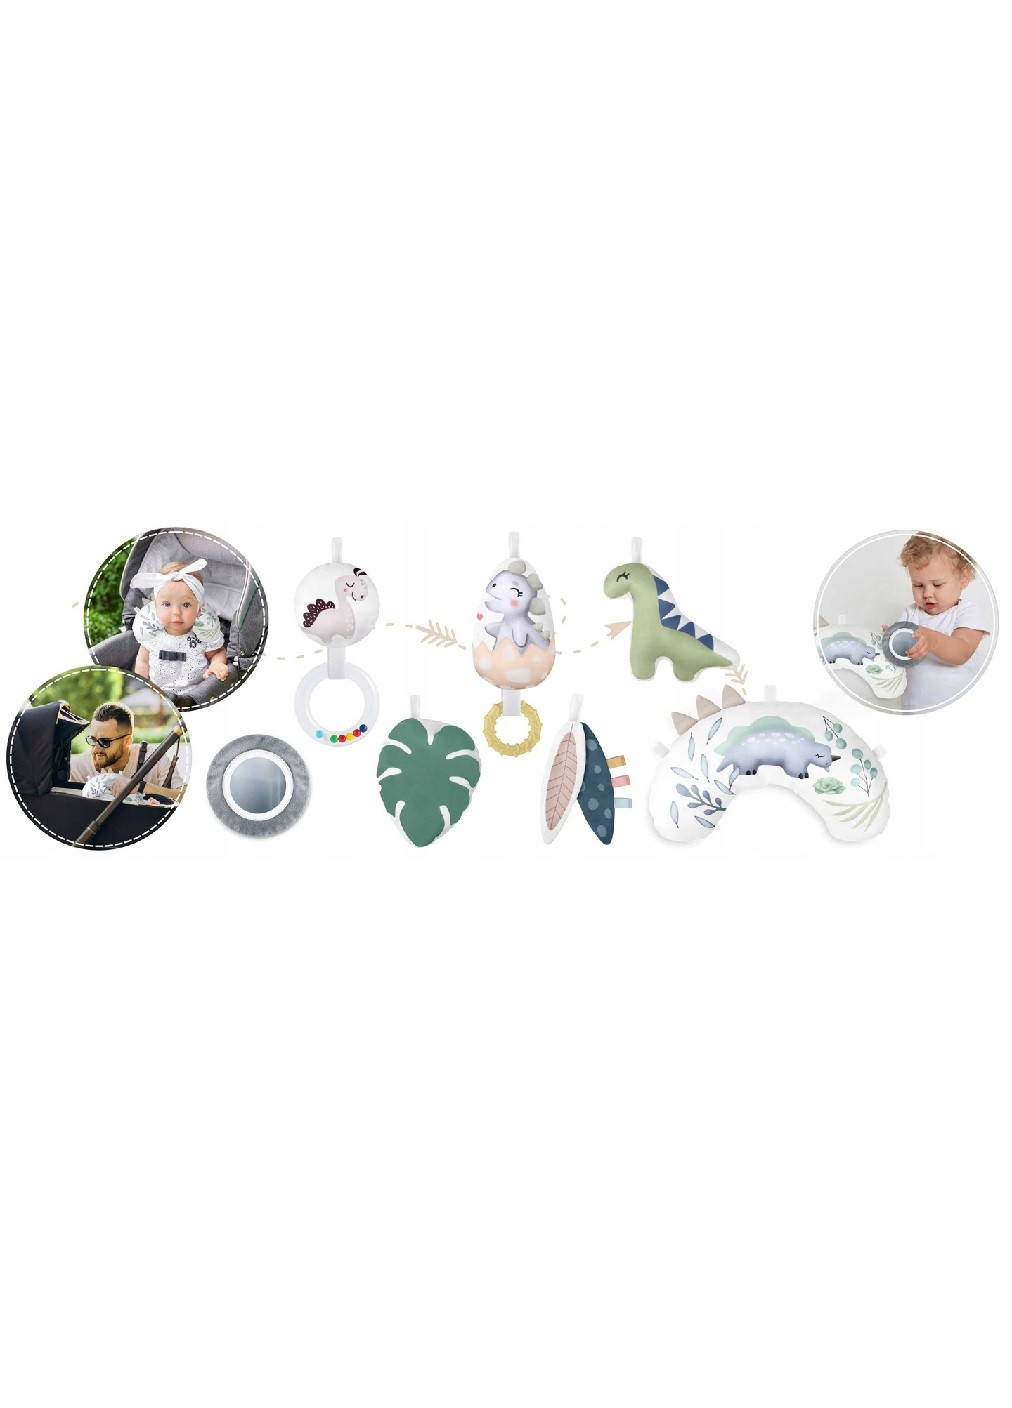 Большой овальный развивающий интерактивный коврик для младенцев малышей детей 78х97х56 см (474821-Prob) Серый Unbranded (259906682)